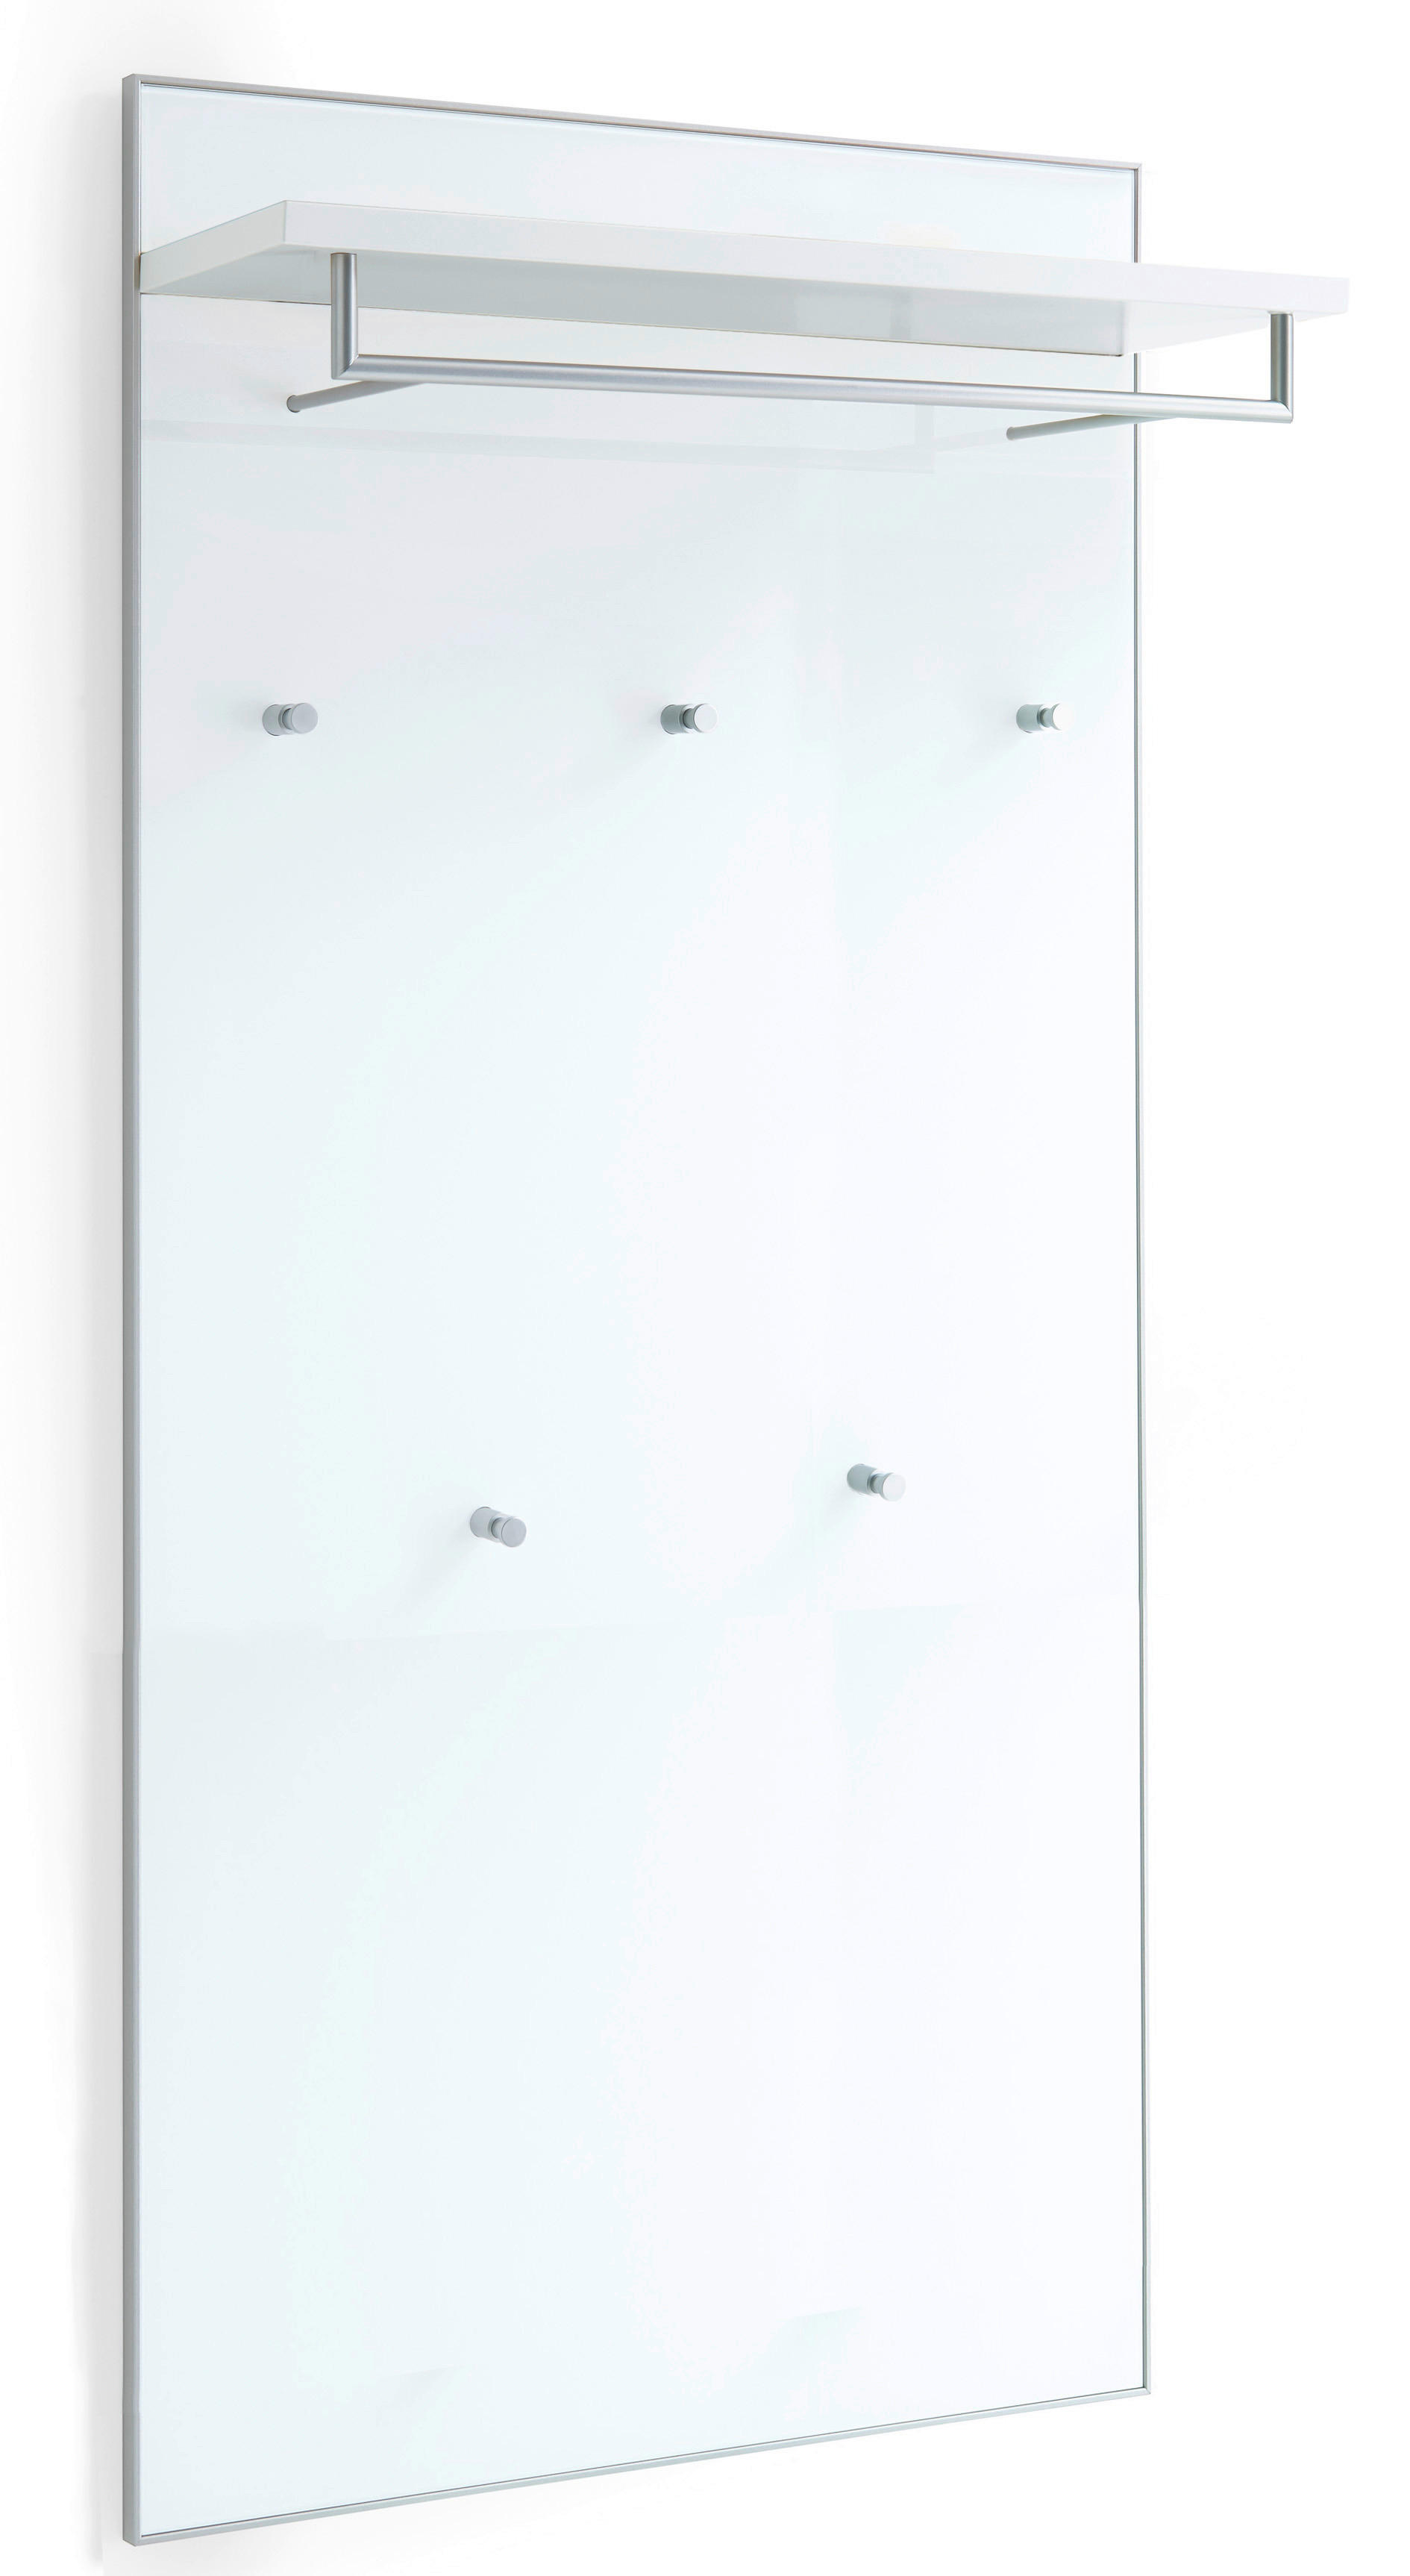 GARDEROBENPANEEL Weiß  - Weiß, Design, Glas (80/170/27cm)